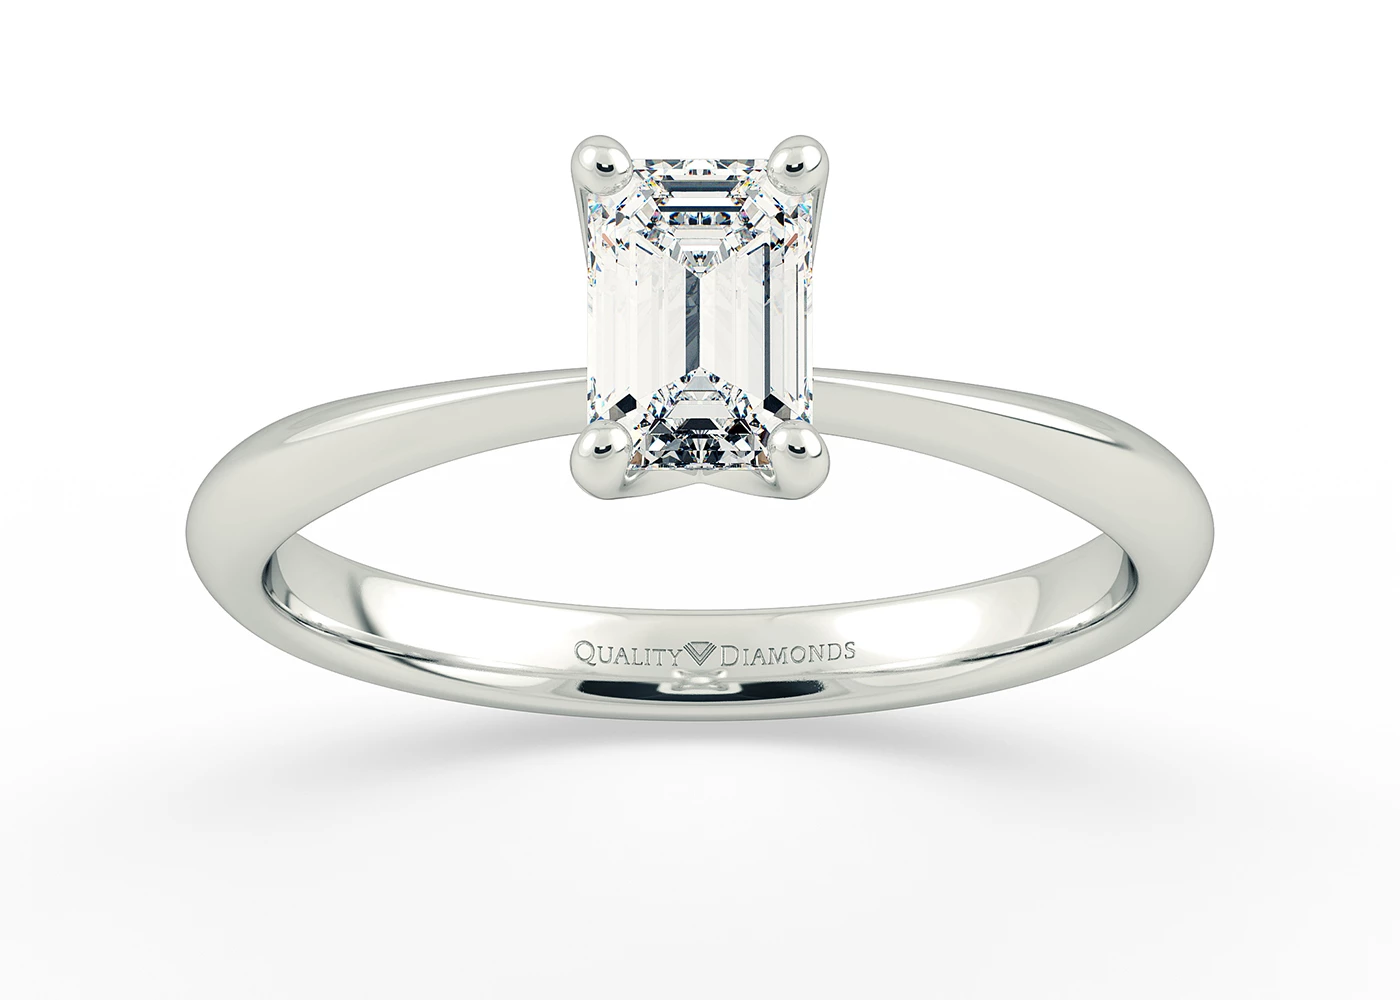 One Carat Emerald Solitaire Diamond Engagement Ring in Platinum 950